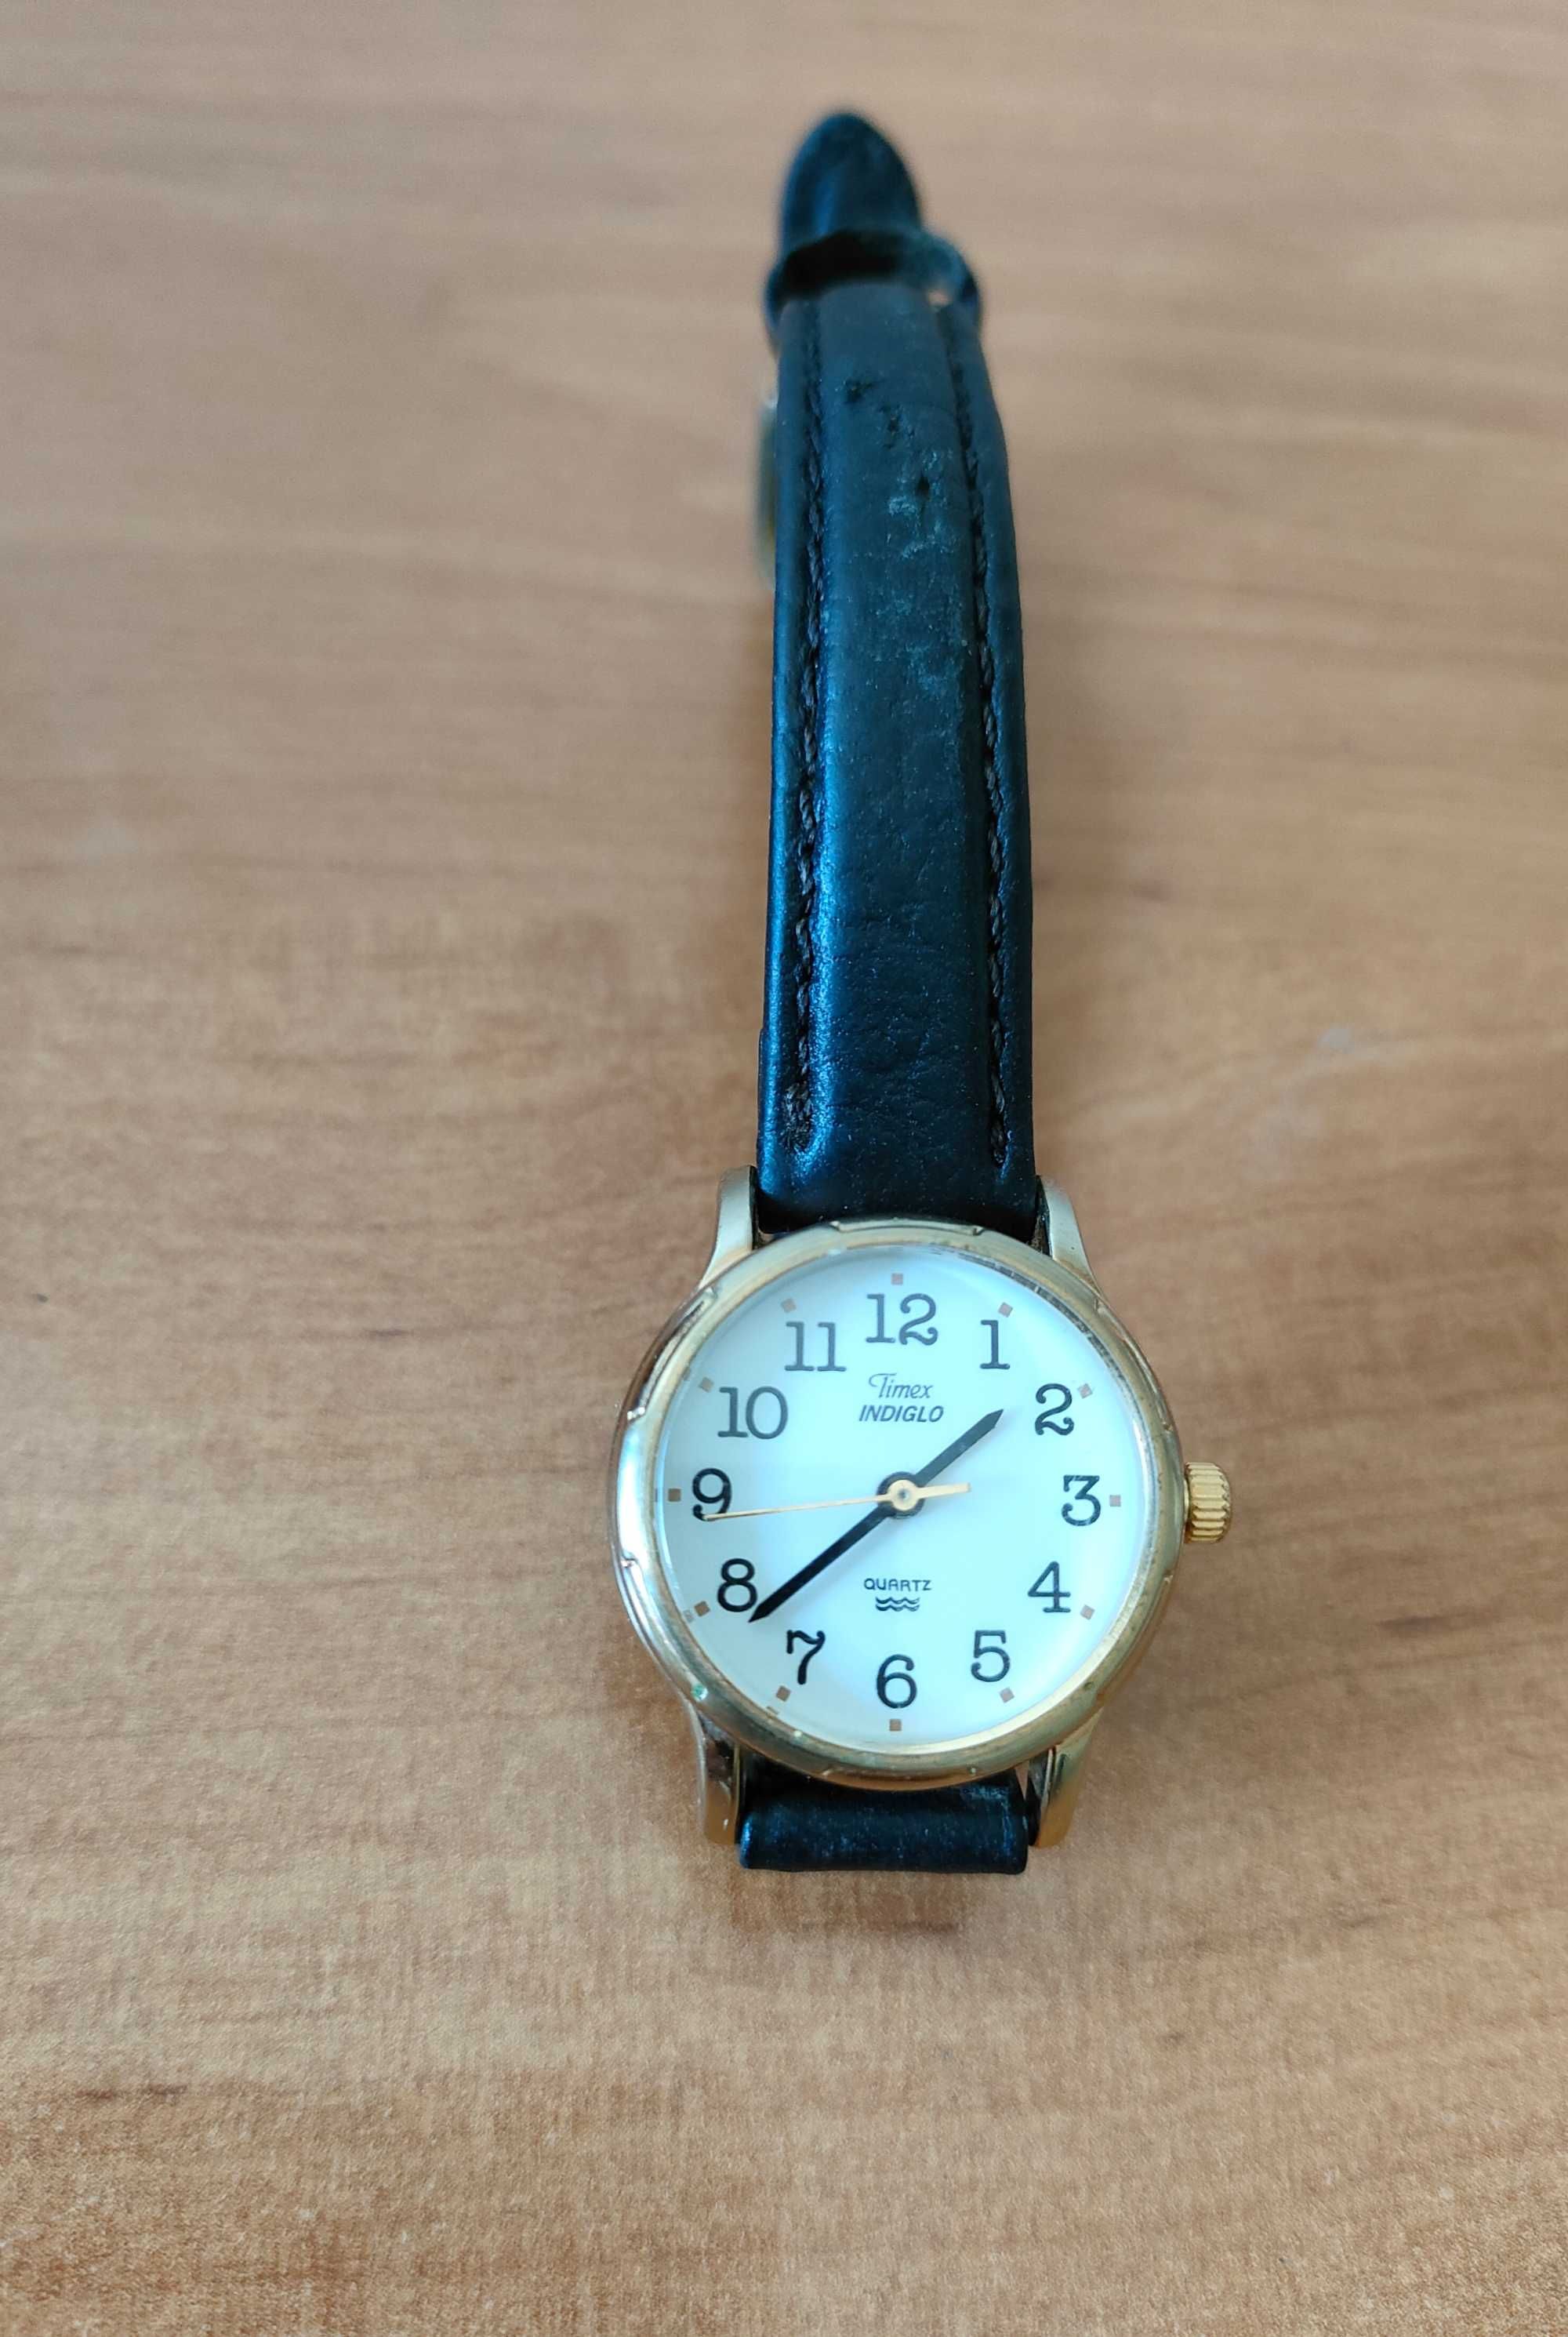 Zegarek damski Timex Indiglo CR 1216 cell wodoszczelny kwarcowy